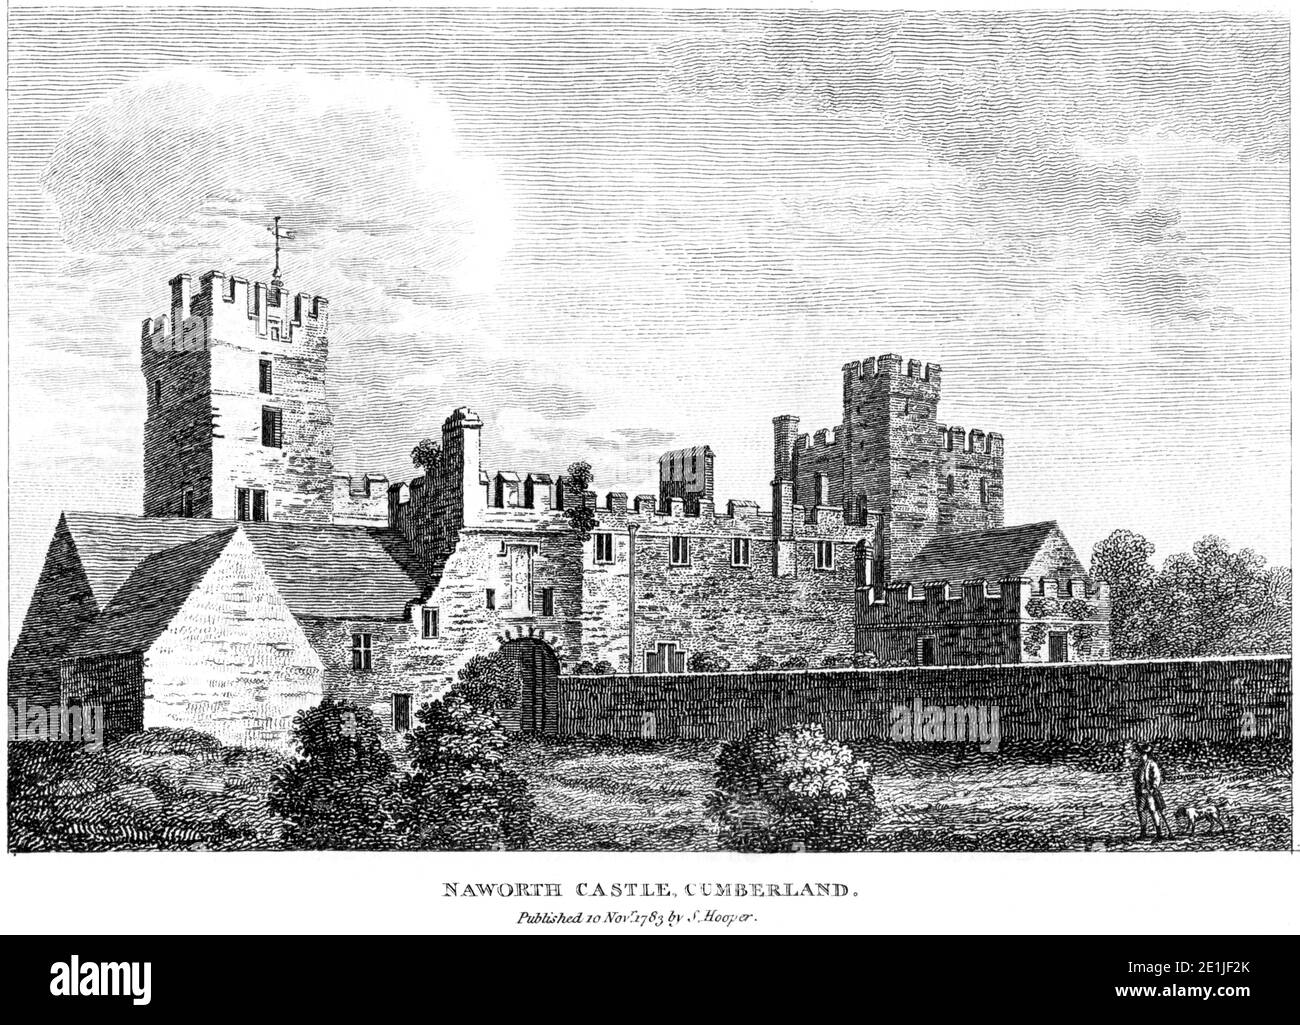 Ein Stich von Naworth Castle, Cumberland veröffentlicht am 10. November1783 gescannt in hoher Auflösung von einem Buch in den 1780er Jahren veröffentlicht. Stockfoto